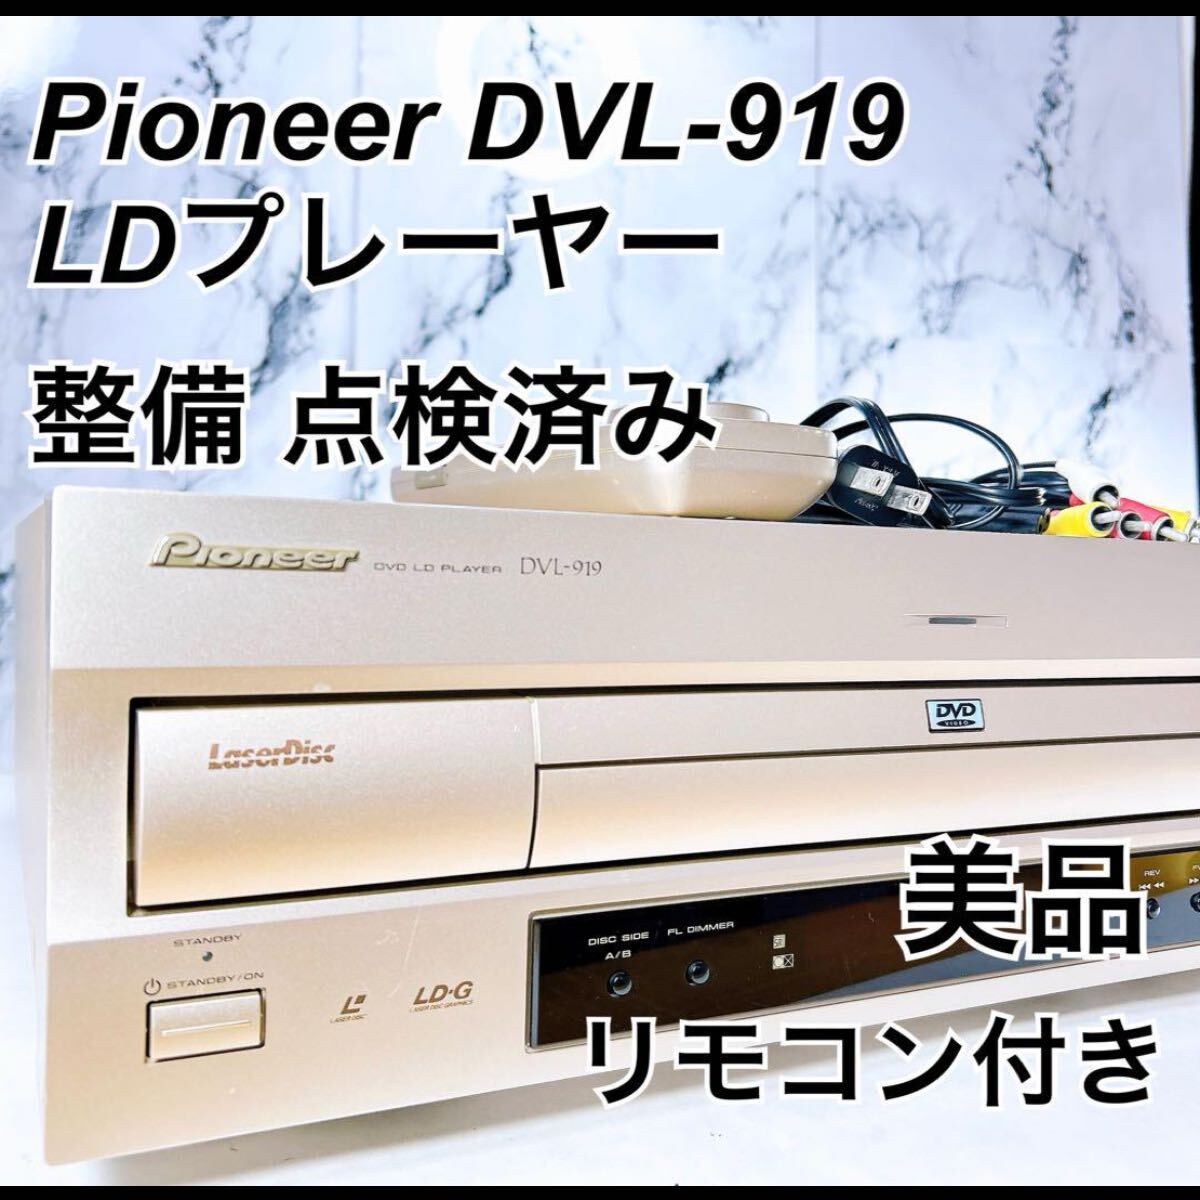 ★メンテナンス済み 美品★ Pioneer DVL-919 パイオニア LDプレーヤー レーザーディスクプレーヤー 純正リモコン付きの画像1